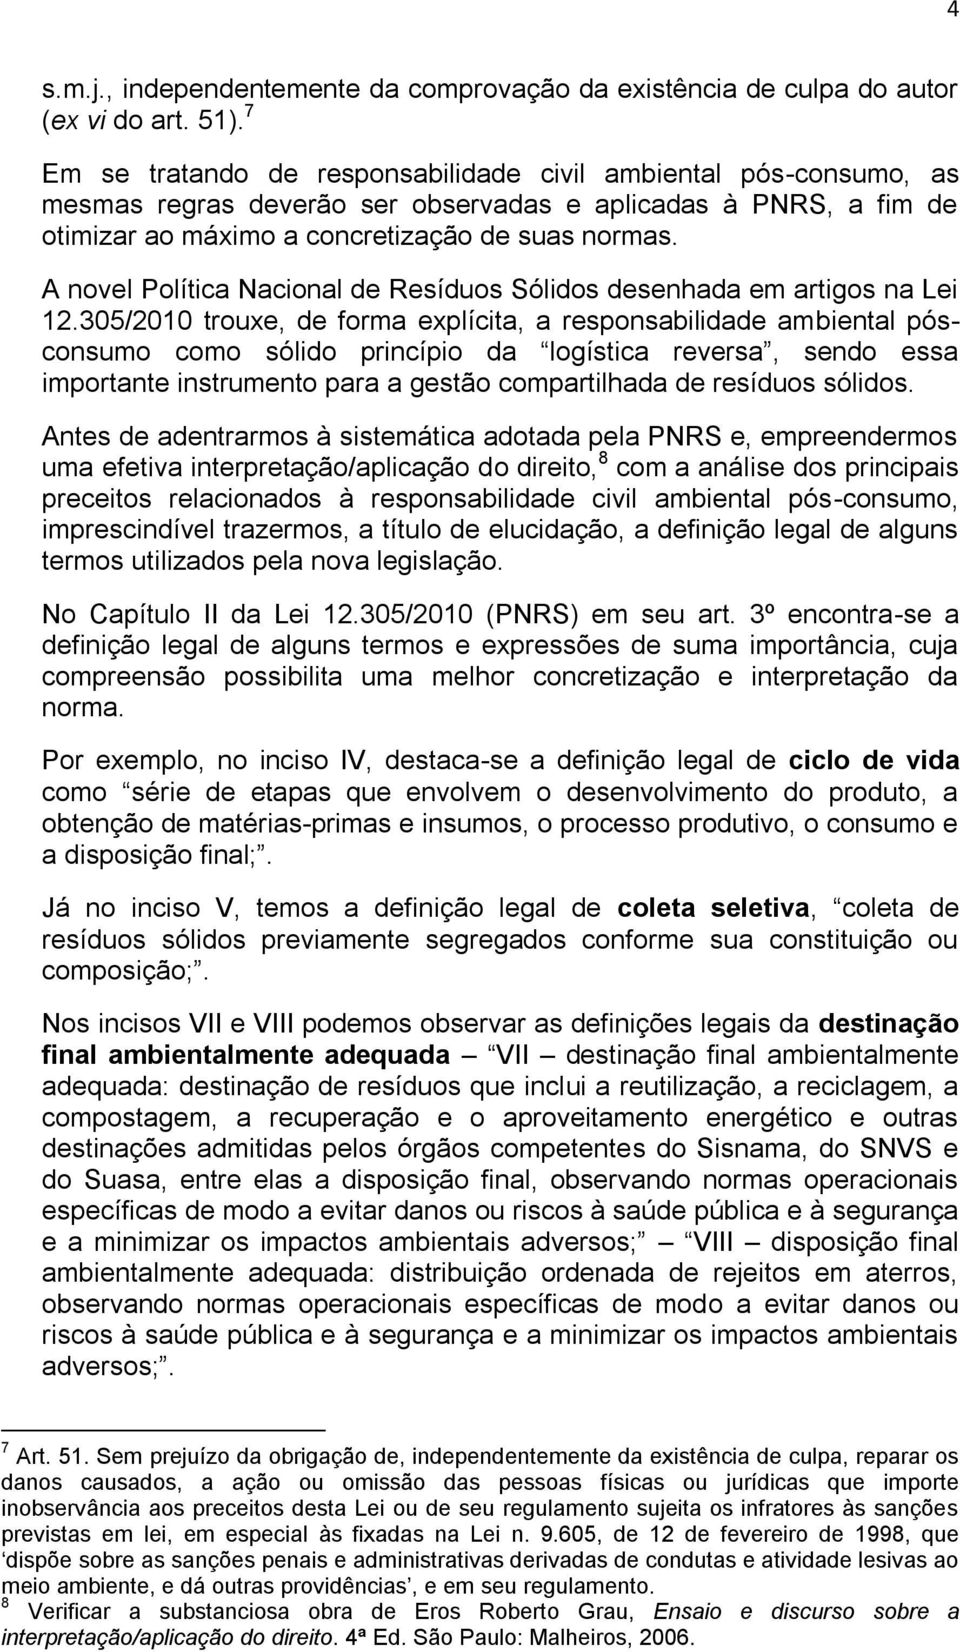 A novel Política Nacional de Resíduos Sólidos desenhada em artigos na Lei 12.